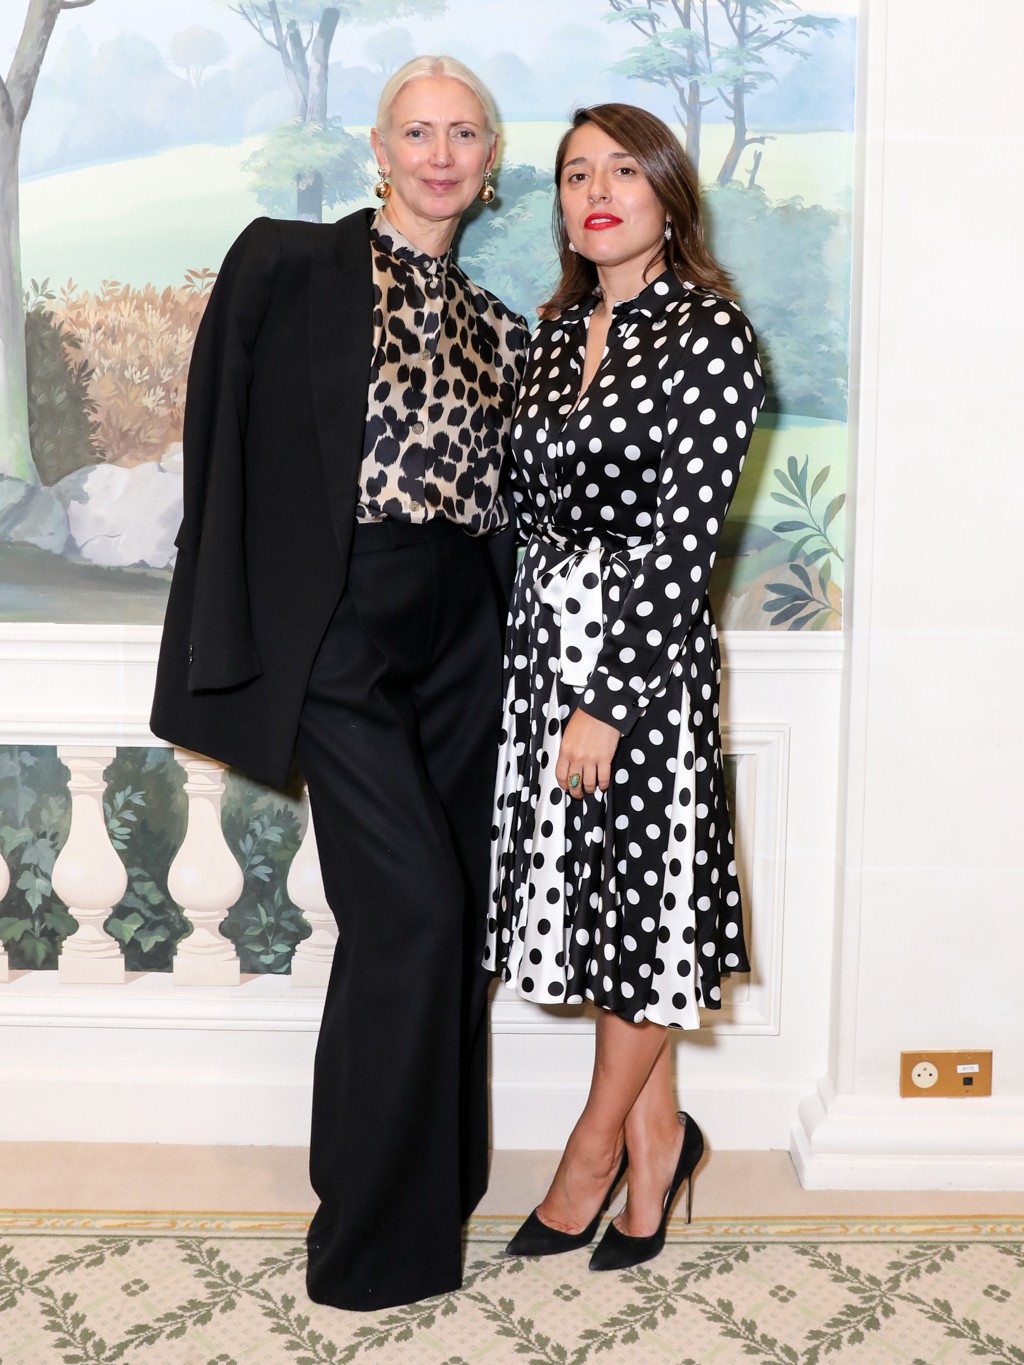 Christiane Arp, editora-chefe da Vogue alemã, e Eugenia de la Torriente, editora-chefe da Vogue espanhola